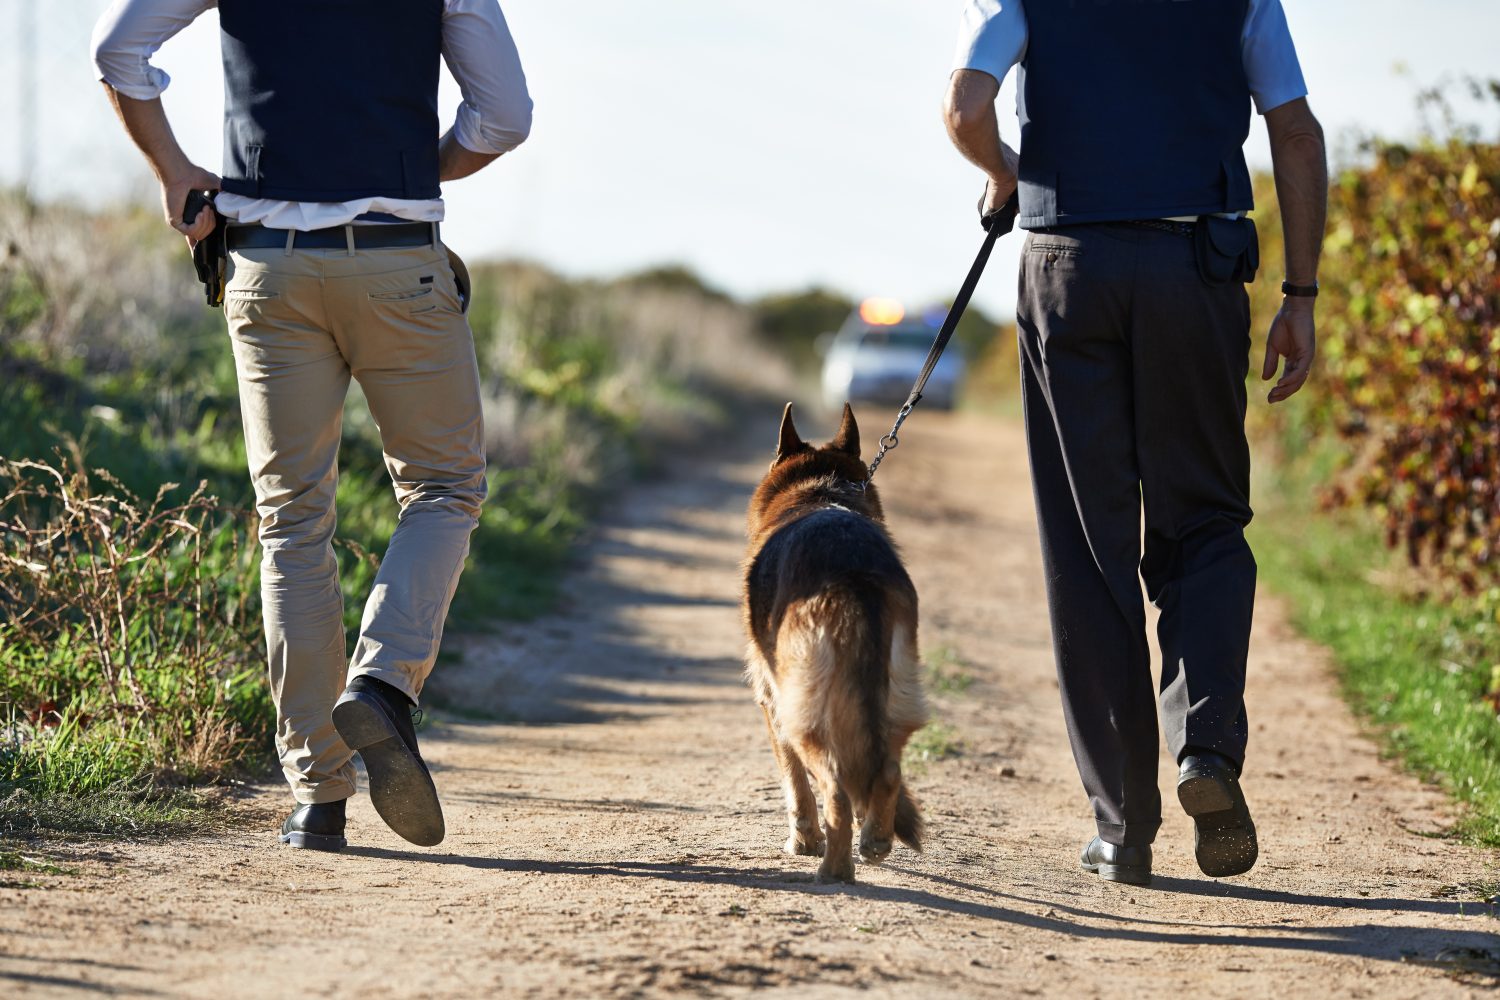 Camminando lungo la scena del crimine.  Vista posteriore di due poliziotti e un cane che camminano lungo una strada rurale.